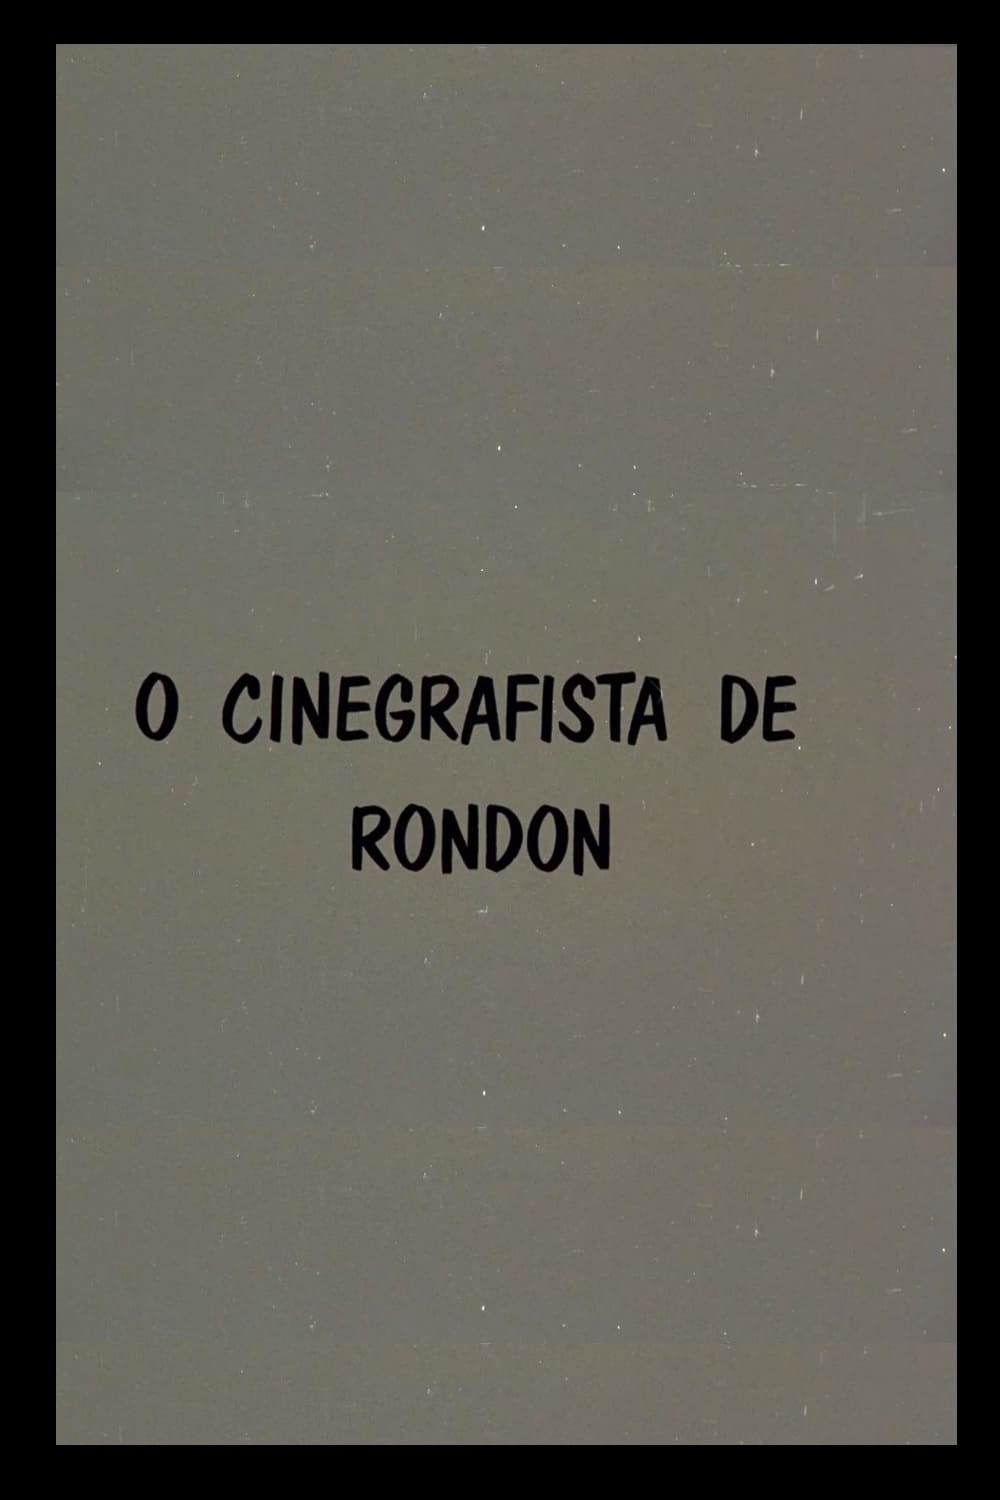 O Cinegrafista de Rondon